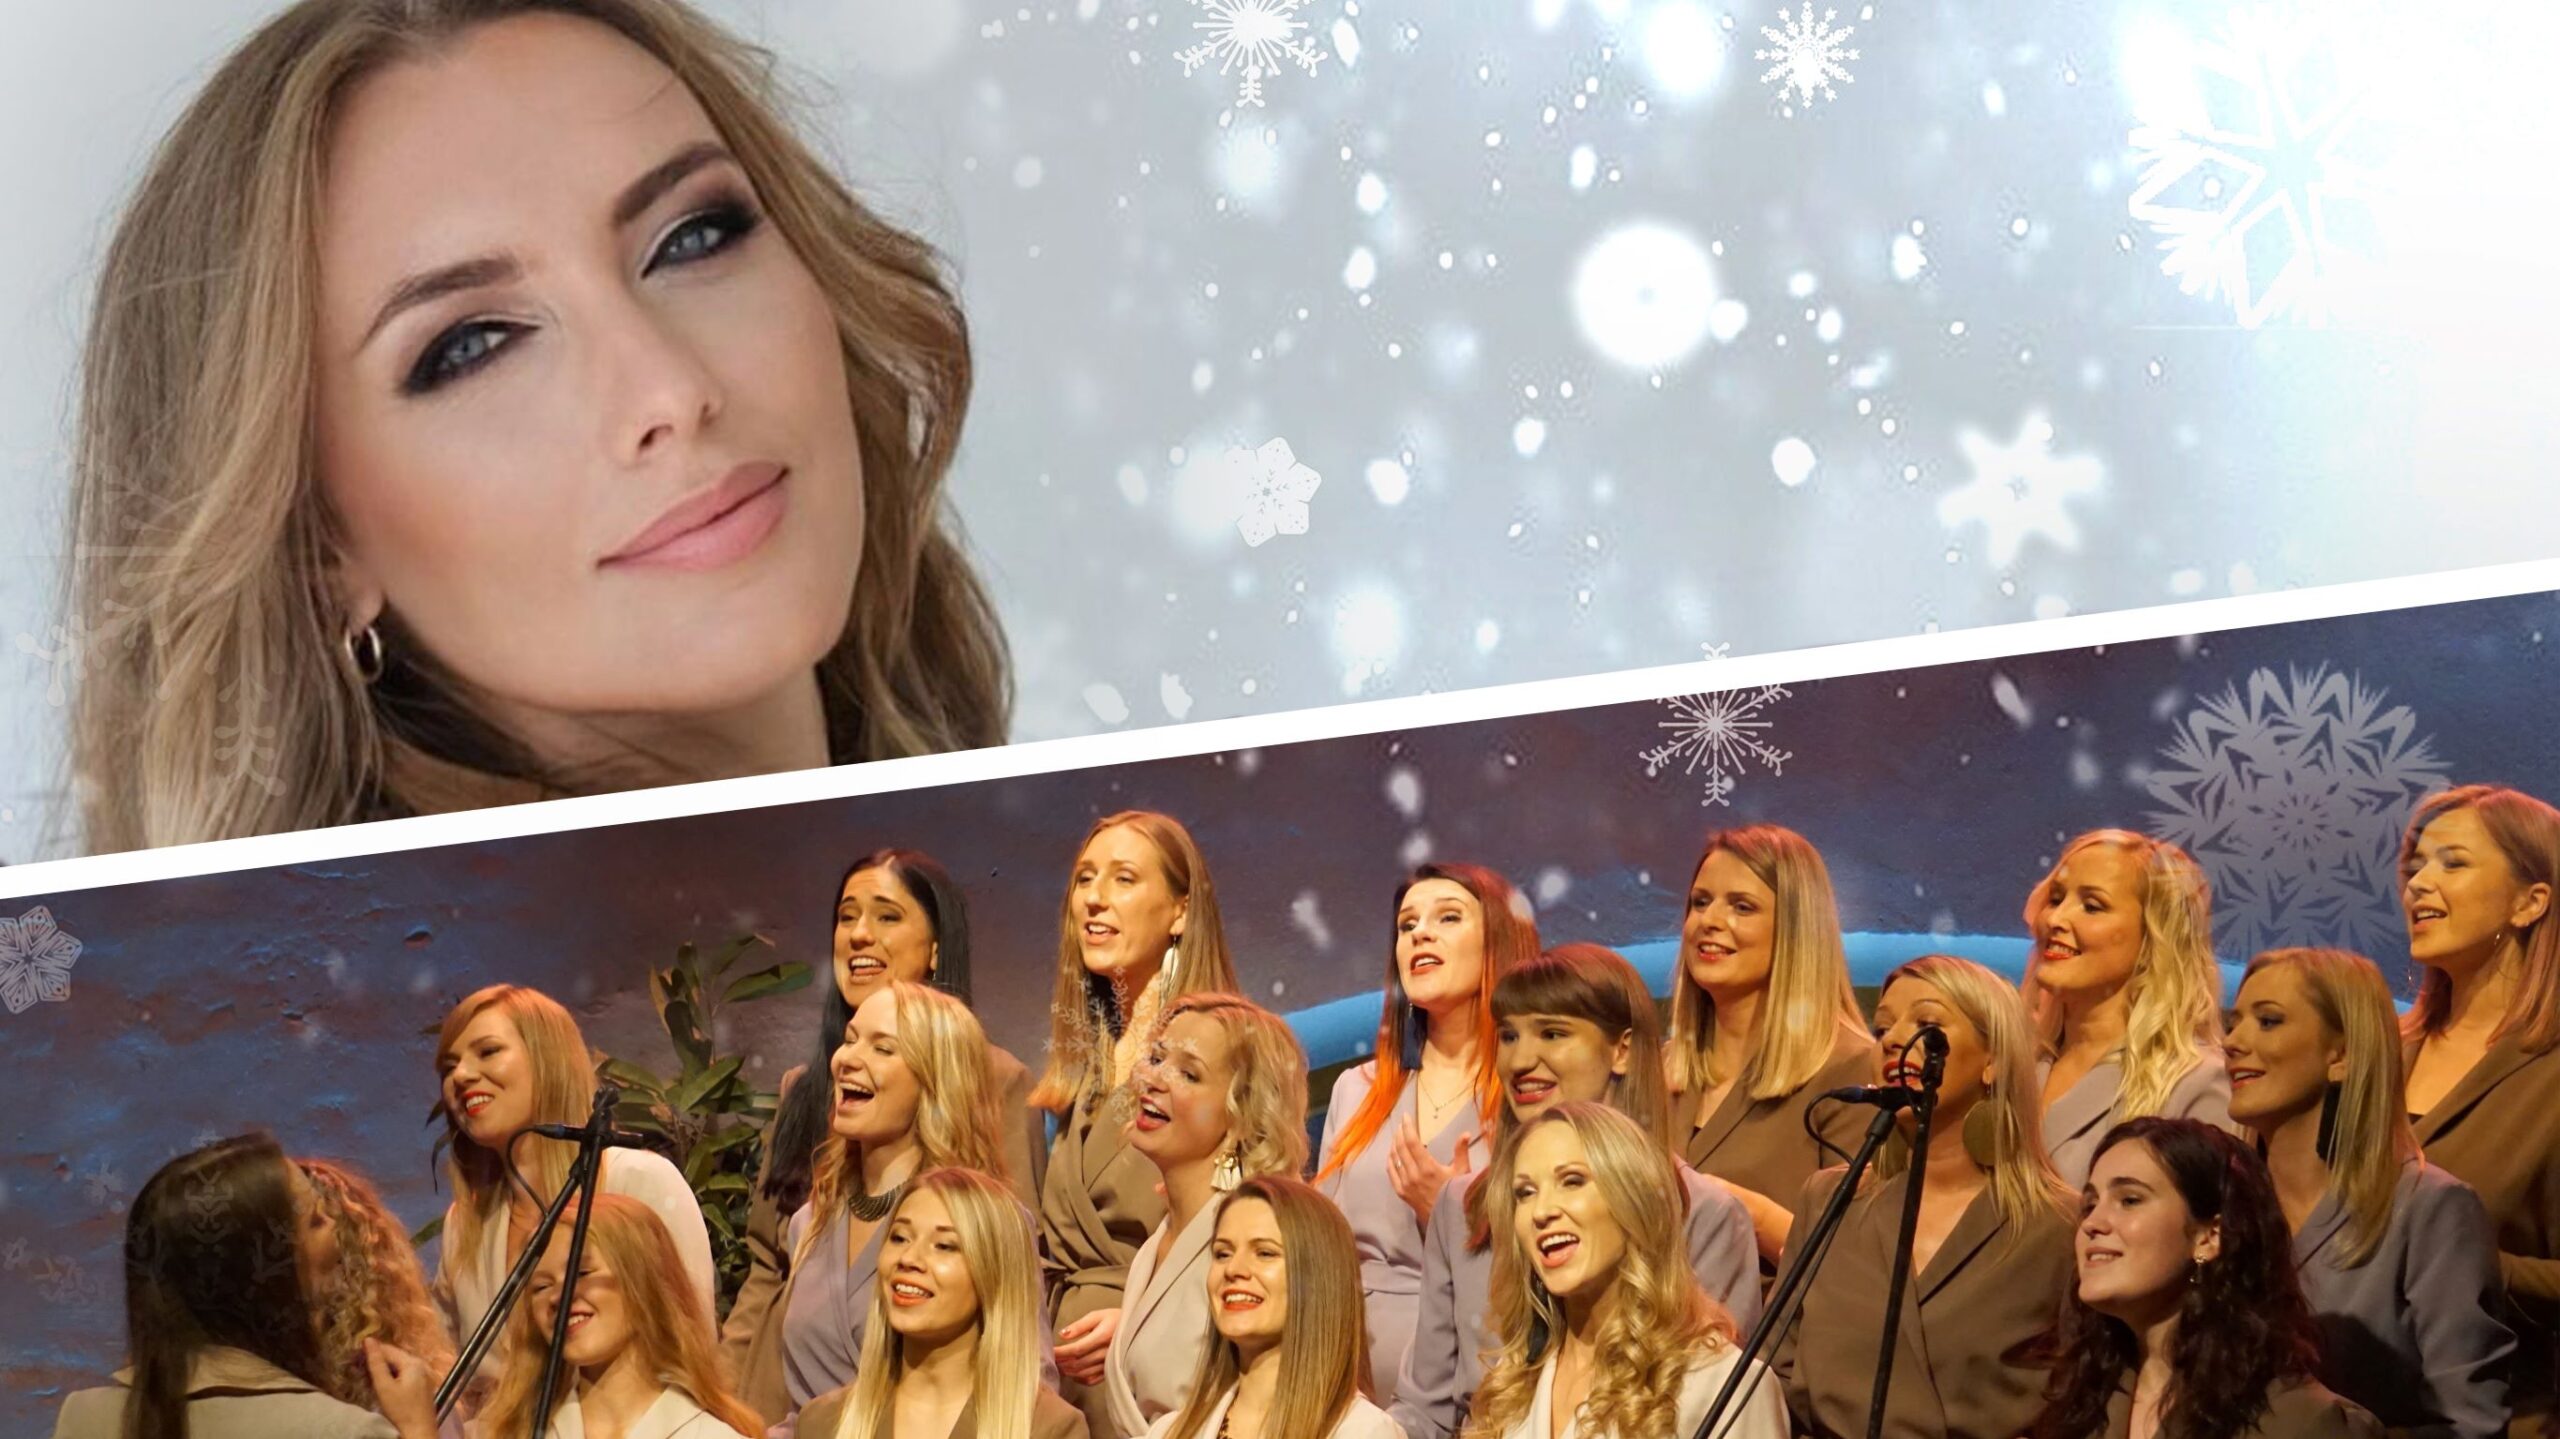 Anmary un GG choir dāvā klausītājiem jaunu dziesmu “Ziemas brīnums”